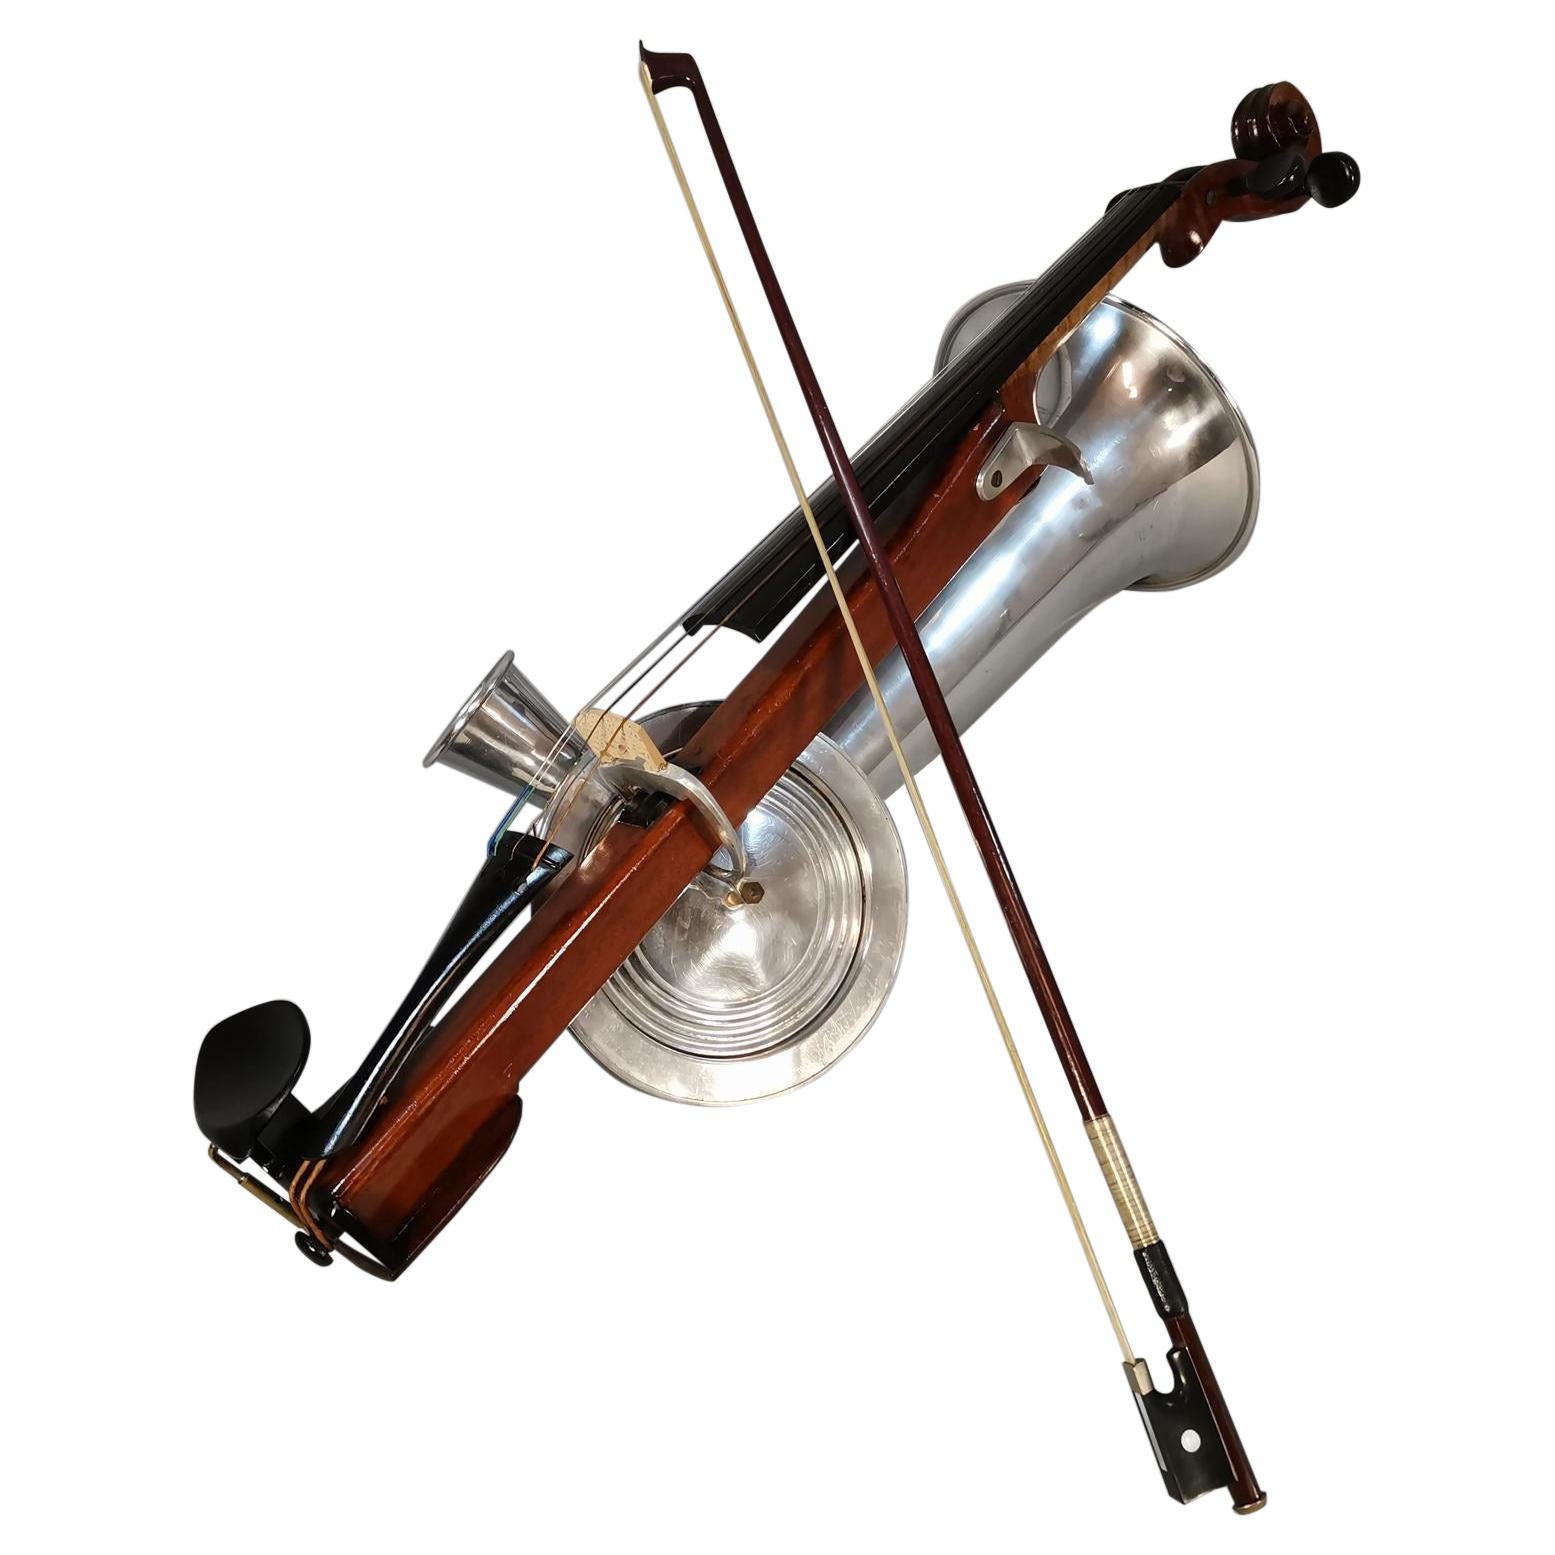 Stroh Violin - For Sale on 1stDibs